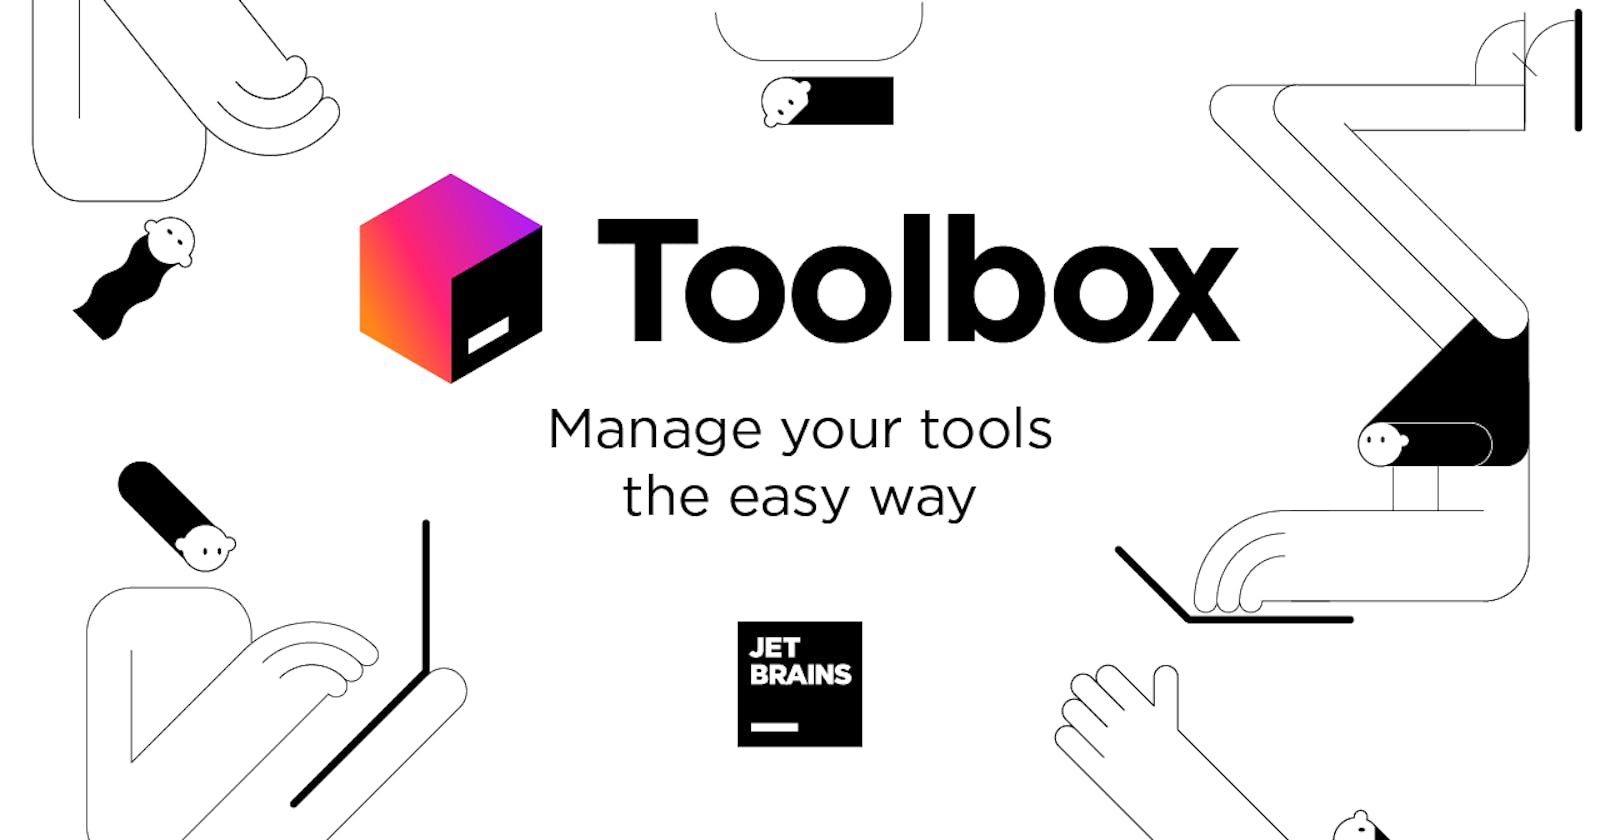 Install JetBrains Toolbox on Linux